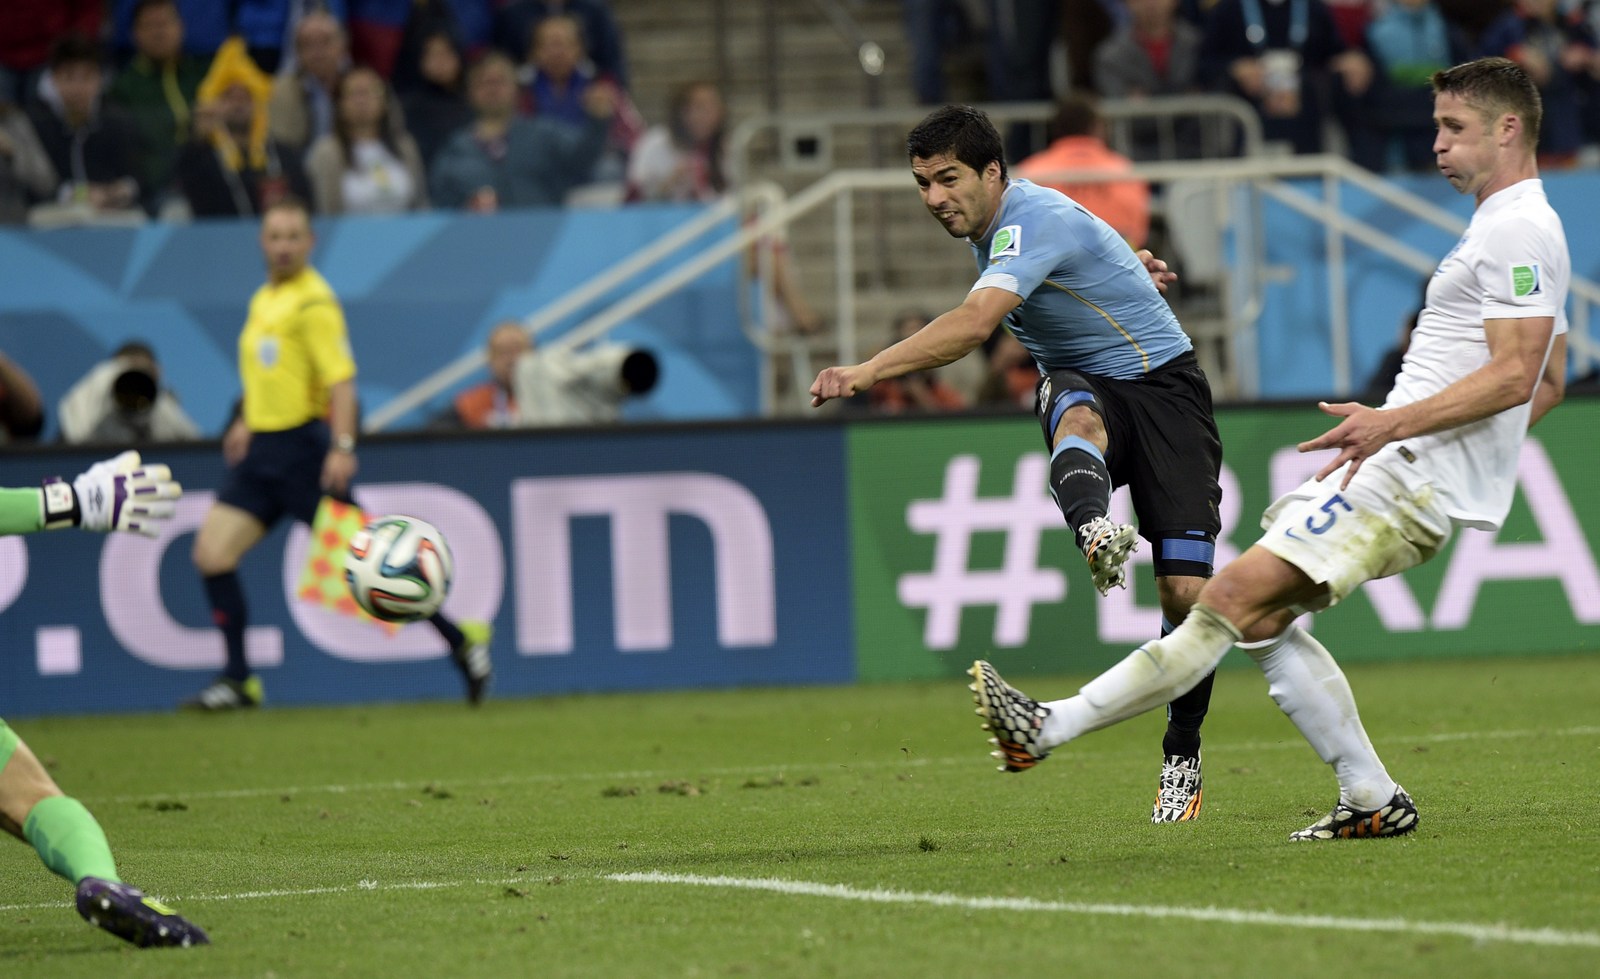 Zweite Chance für England gegen Uruguay? Nein!